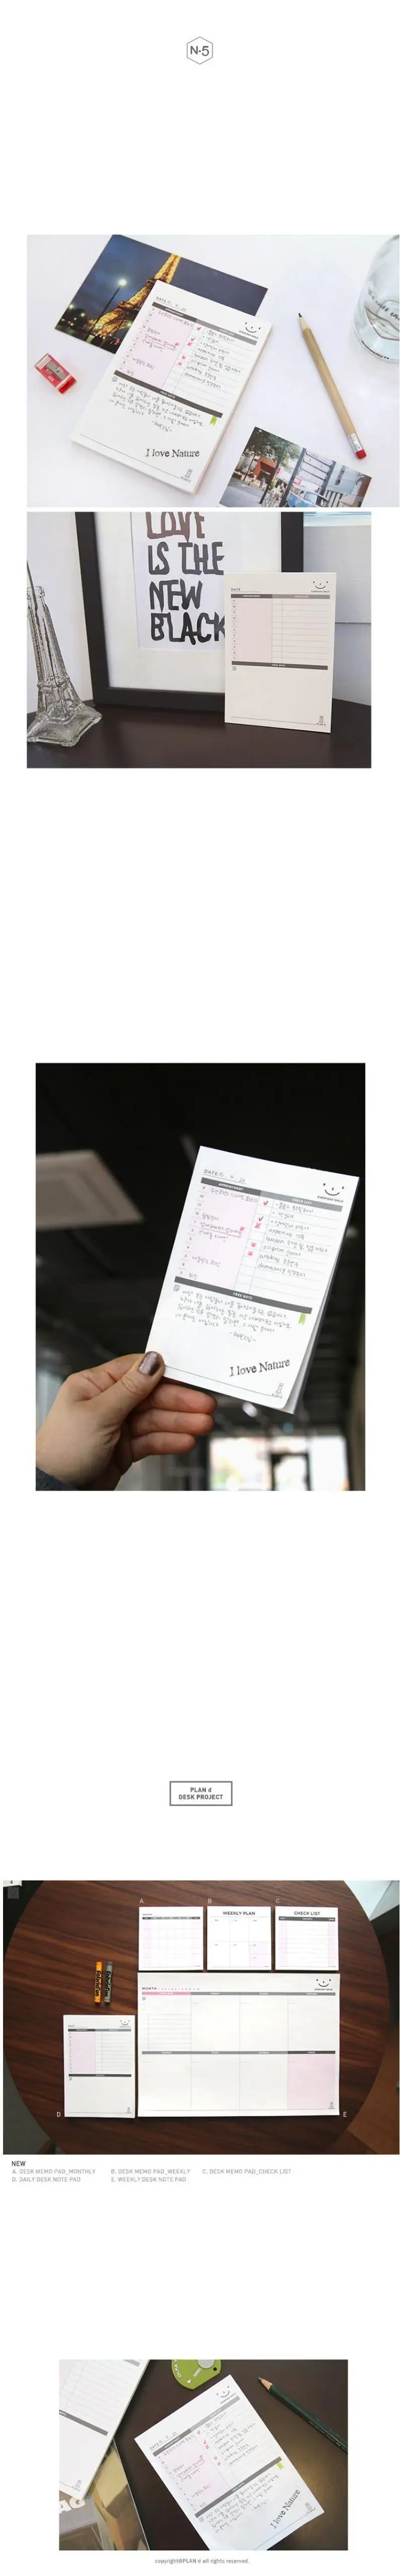 Корейский кавайный милый школьные офисные принадлежности ежедневный Еженедельный Ежемесячный план стол блокнот планировщик повесток дня контрольный лист